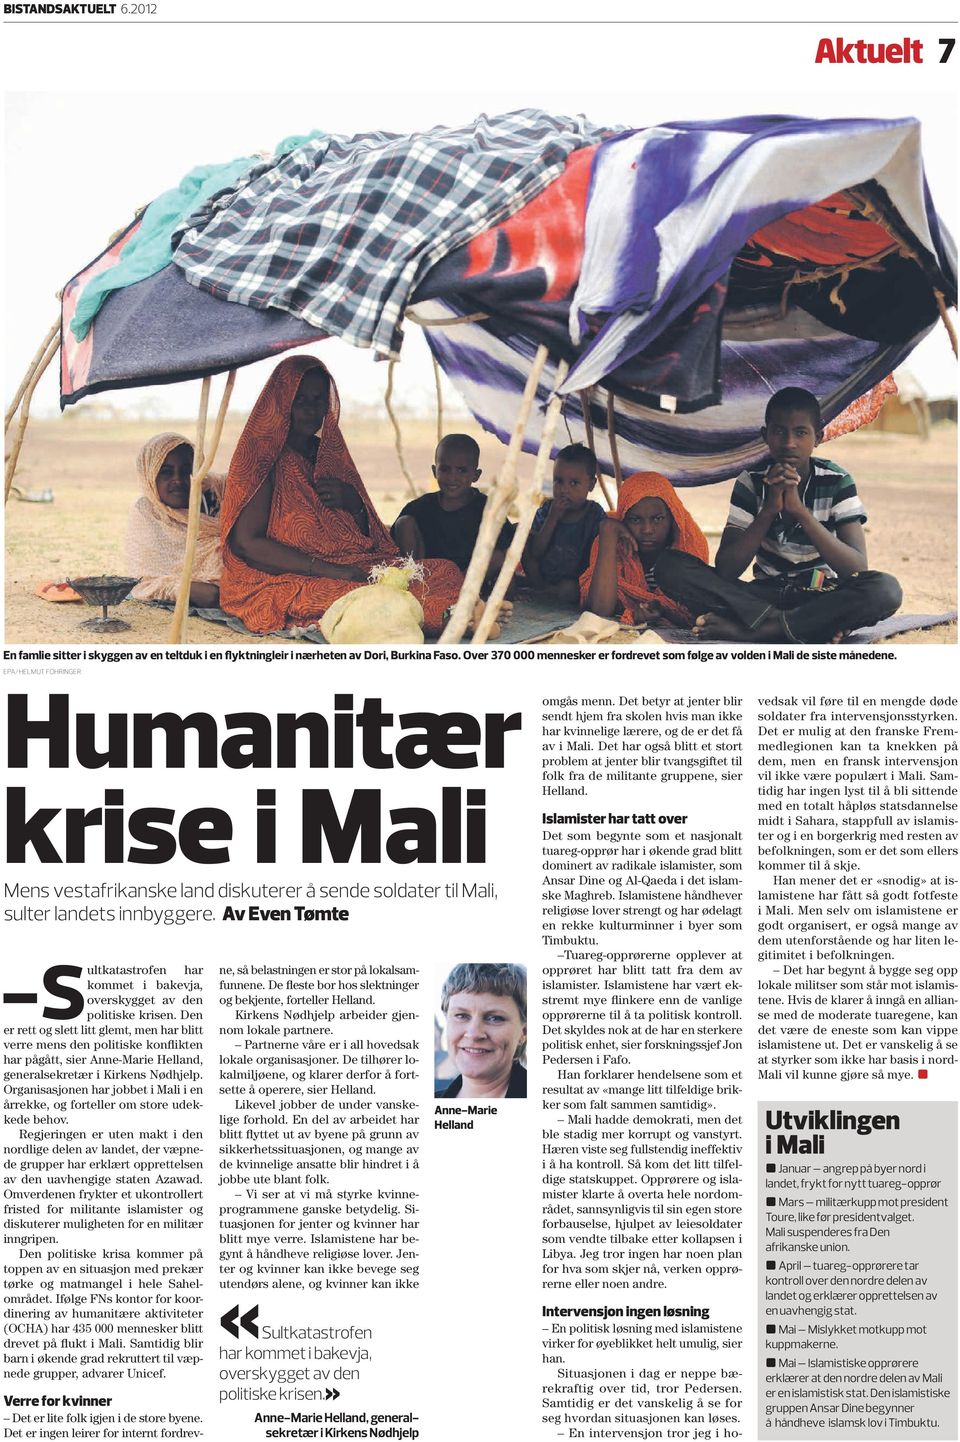 EPA/HELMUT FOHRINGER Humanitær krise i Mali Mens vestafrikanske land diskuterer å sende soldater til Mali, sulter landets innbyggere.